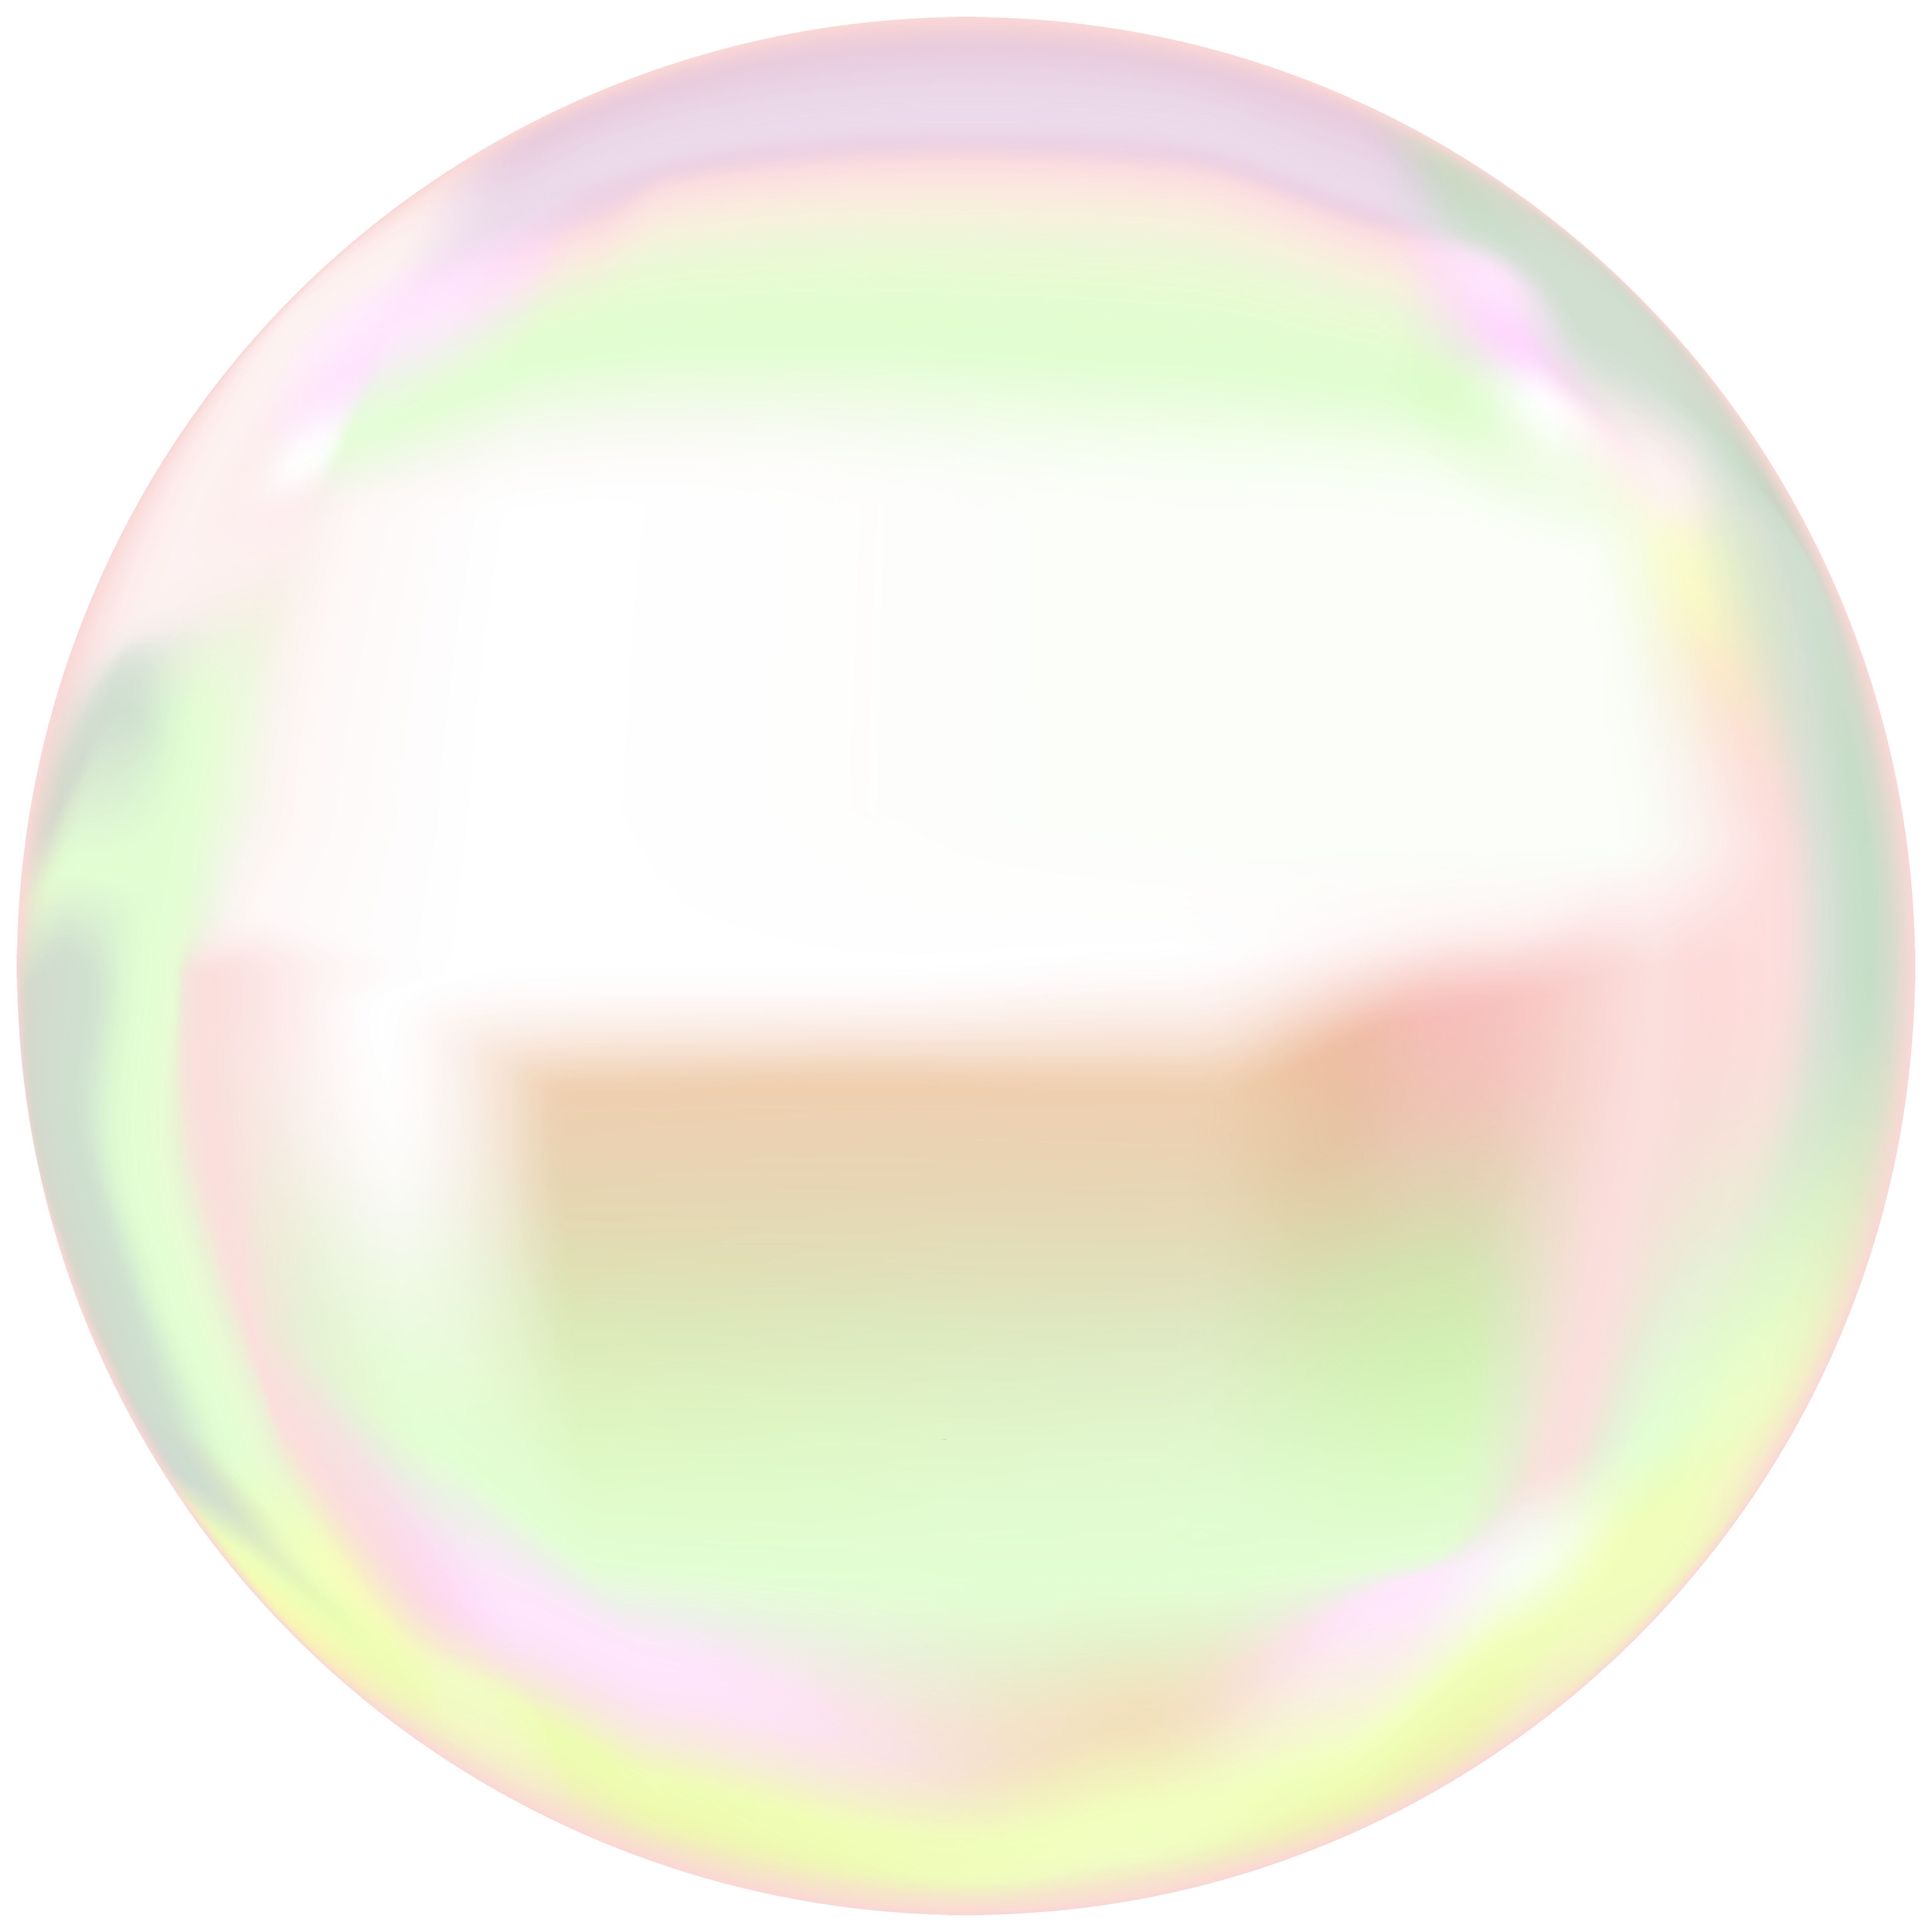 Transparent Bubbles PNG Clip Art Image​